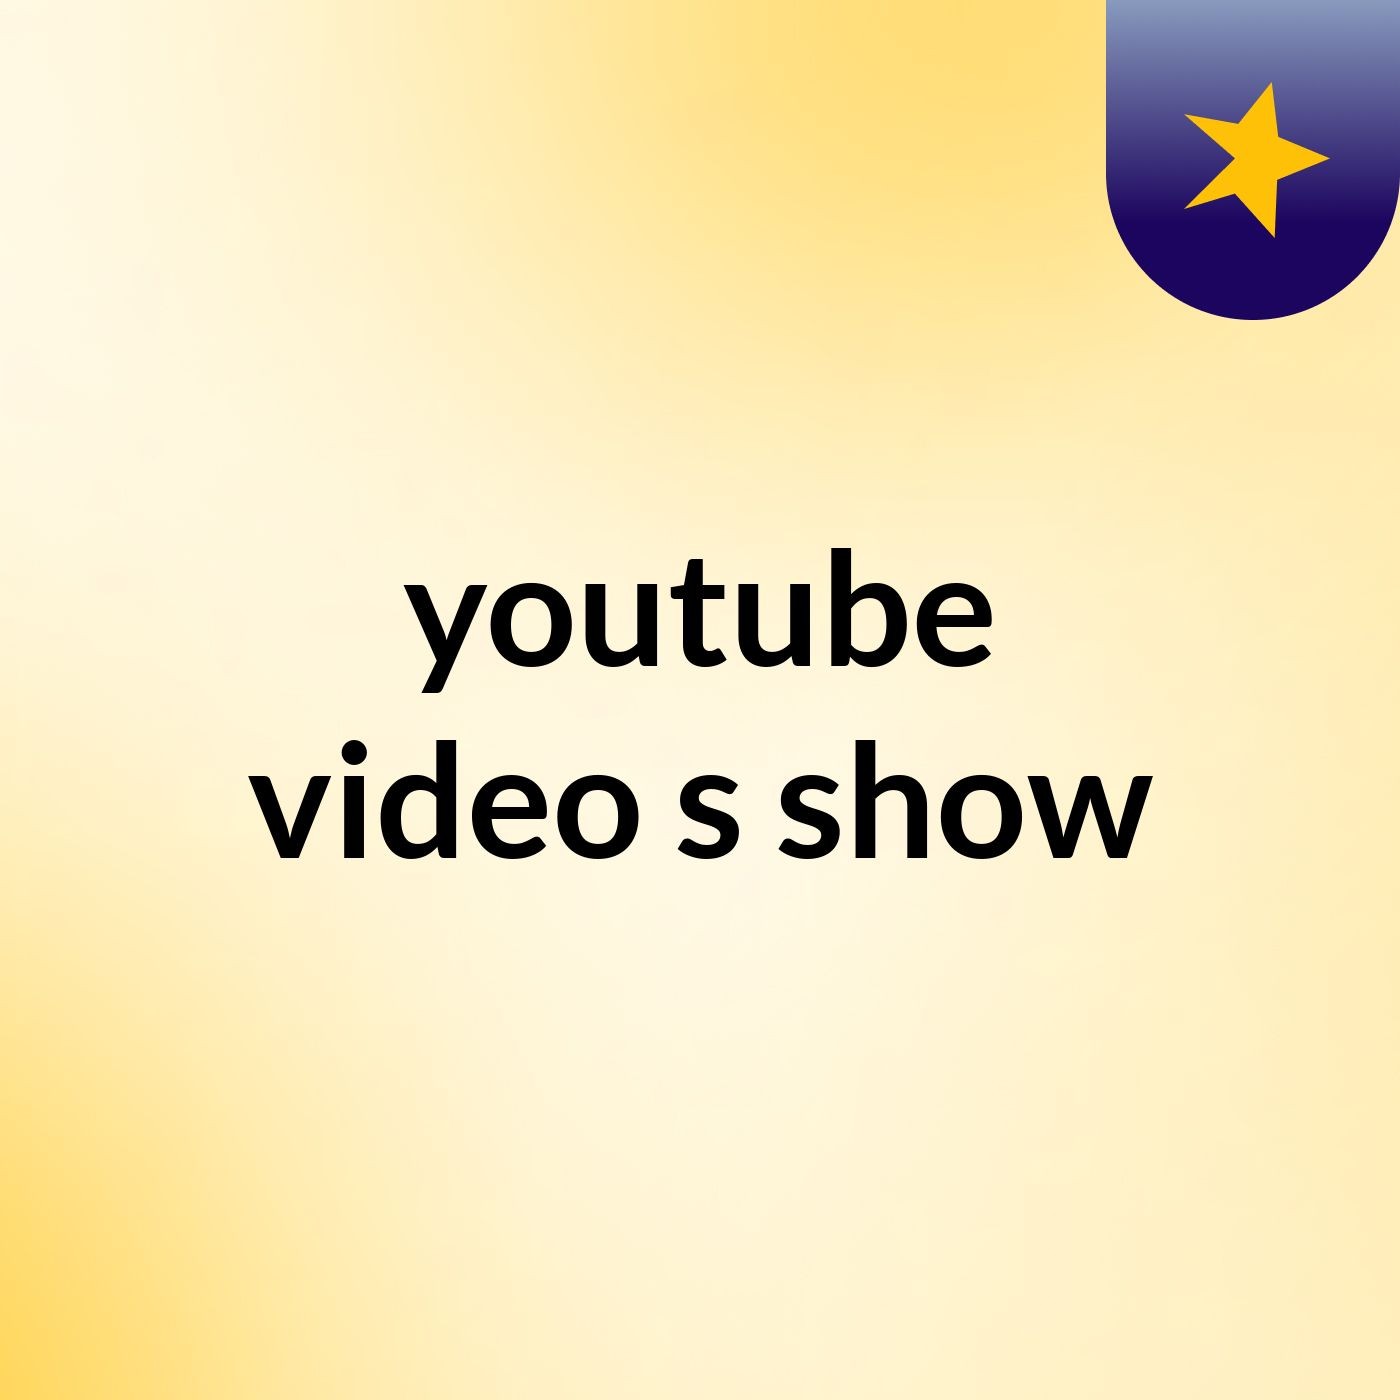 Episódio 5 - youtube video's show